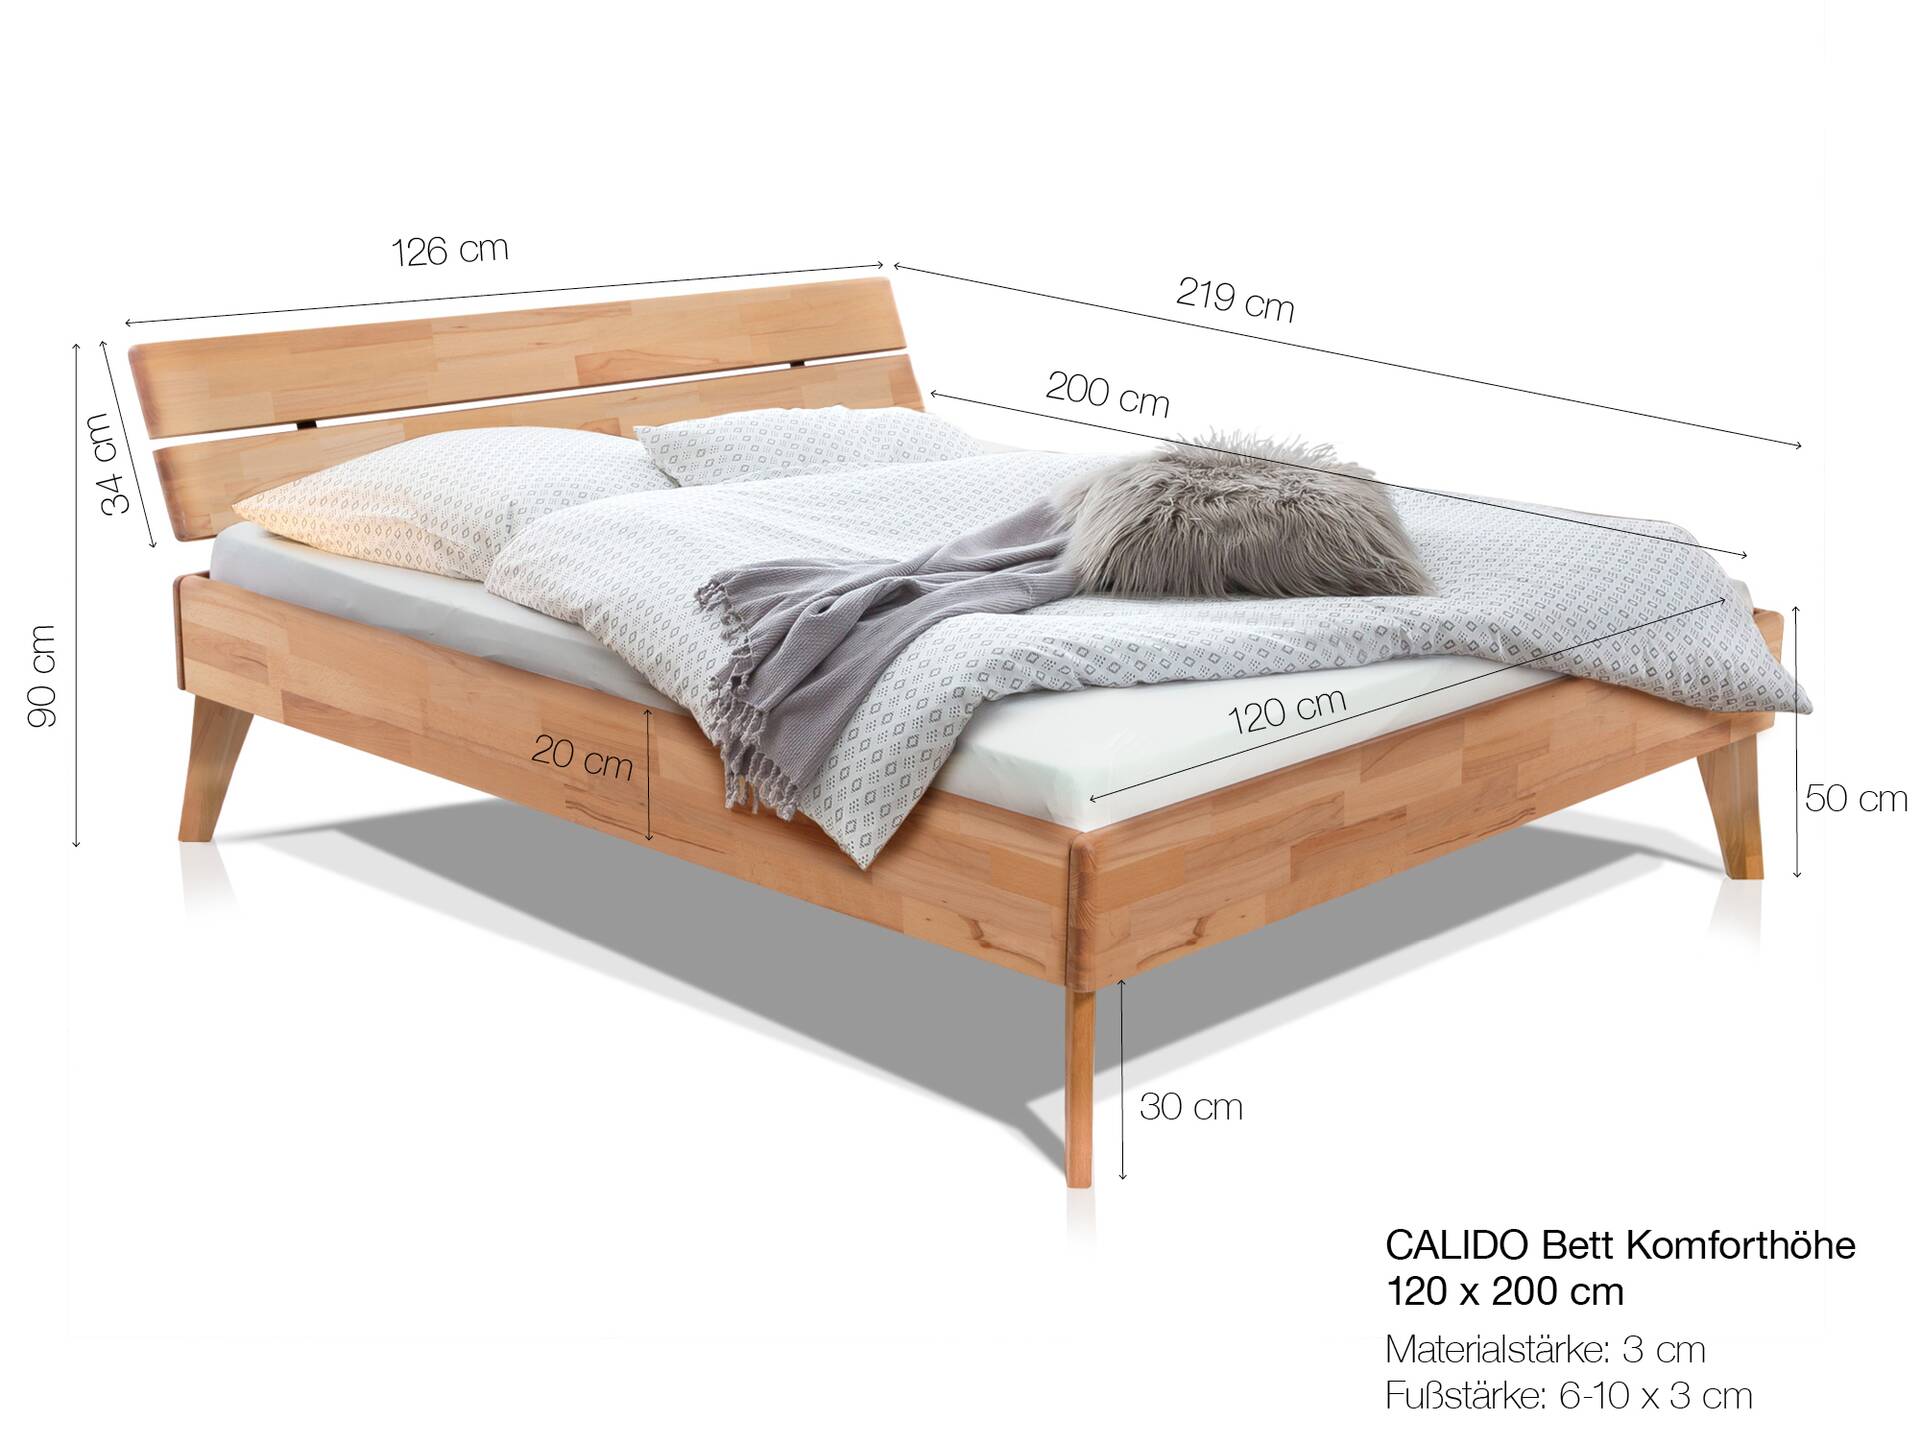 CALIDO 4-Fuß-Bett mit Kopfteil, Material Massivholz 120 x 200 cm | Buche nussbaumfarbig gedämpft | Komforthöhe